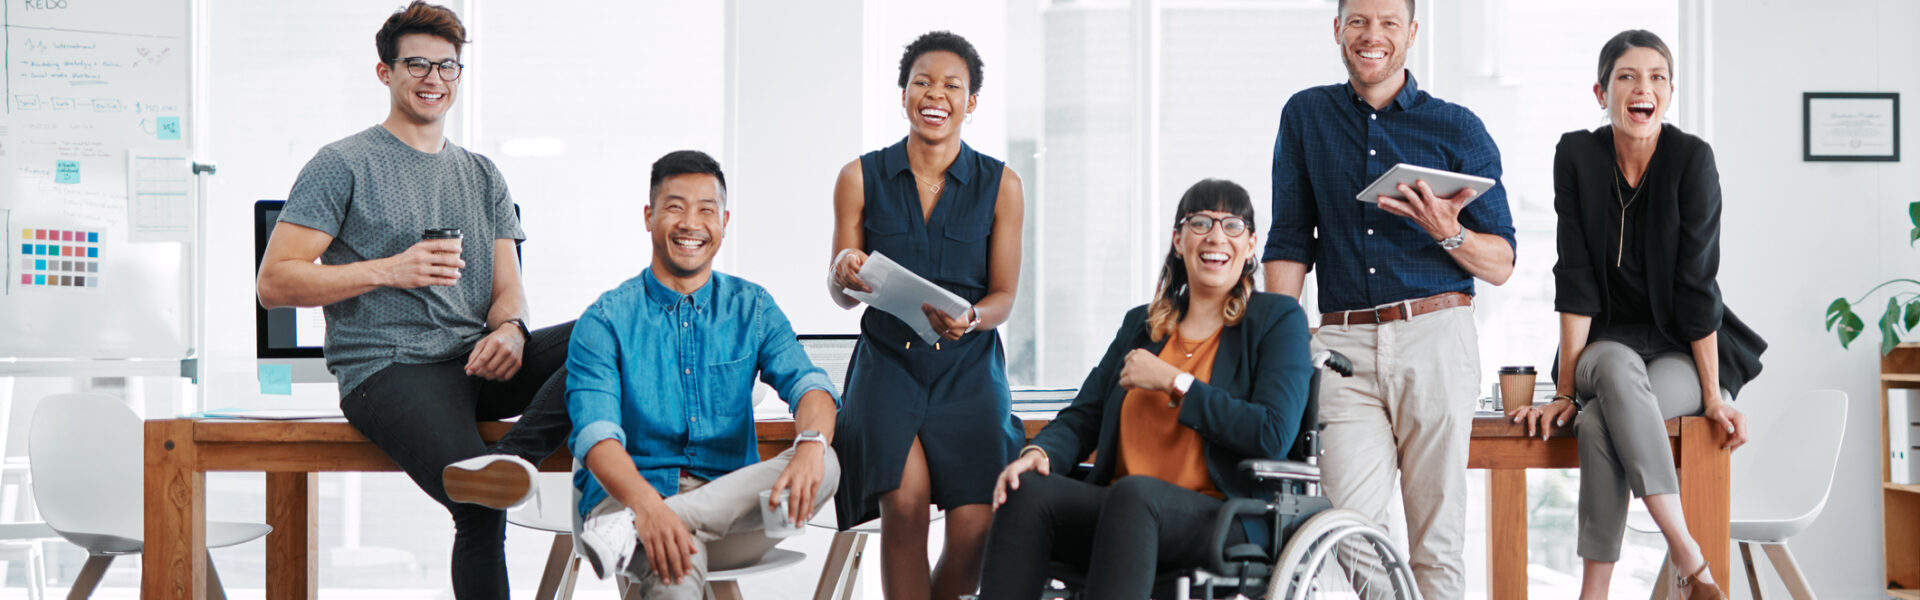 SAP SuccessFactors: UX zur Förderung von Vielfalt und Inklusion